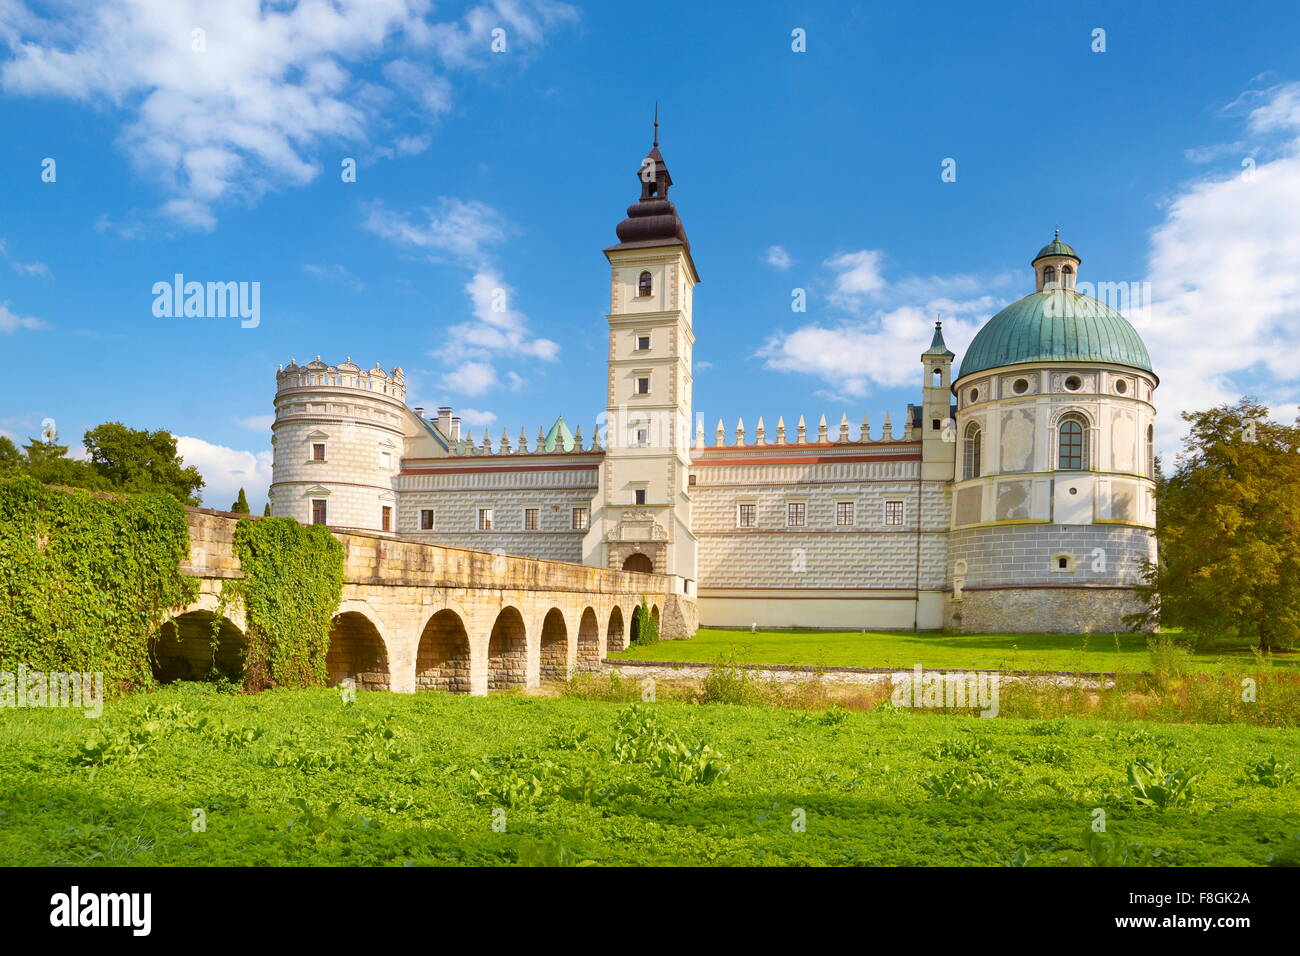 Krasiczyn Castle, Bieszczady region, Poland Stock Photo